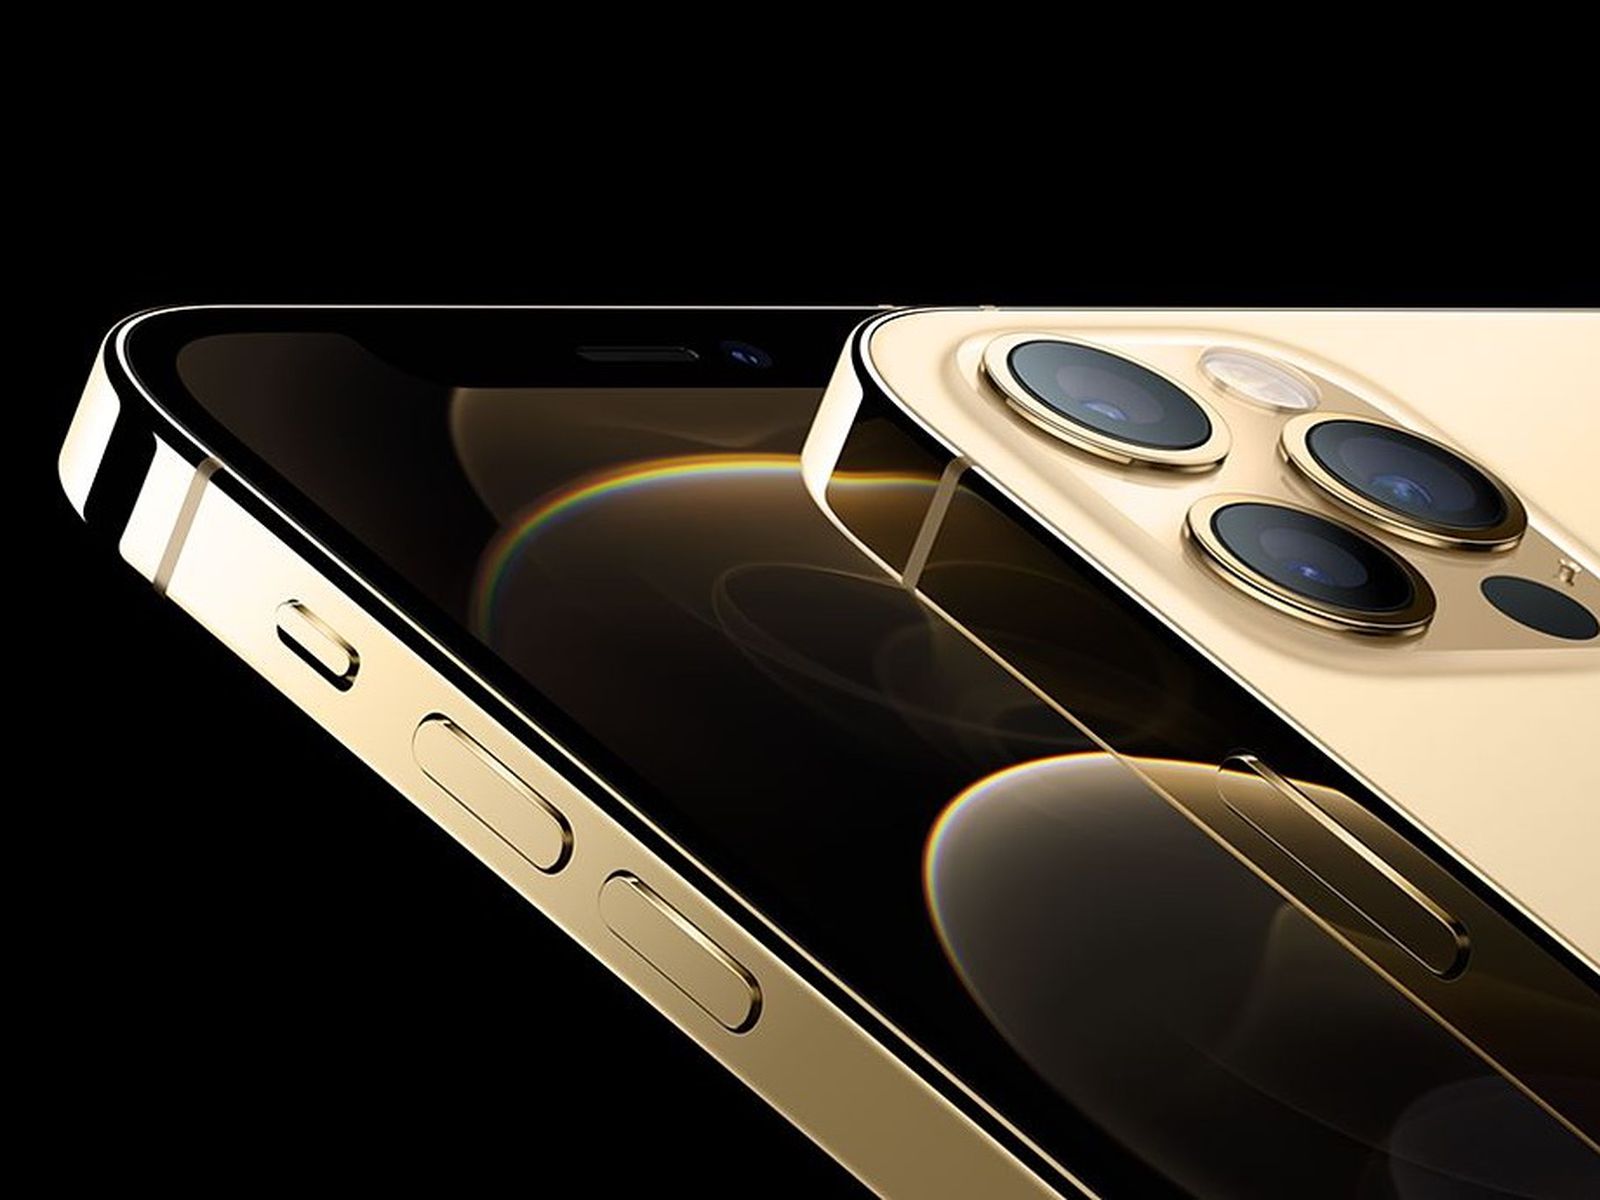 Với màu sắc sang trọng của iPhone 12 Pro Vàng, bạn chắc hẳn sẽ cảm thấy tự hào khi thể hiện phong cách thời thượng. Hãy cùng chiêm ngưỡng những hình ảnh đẹp mắt của sản phẩm này để chọn lựa cho mình chiếc iPhone ưng ý nhất.